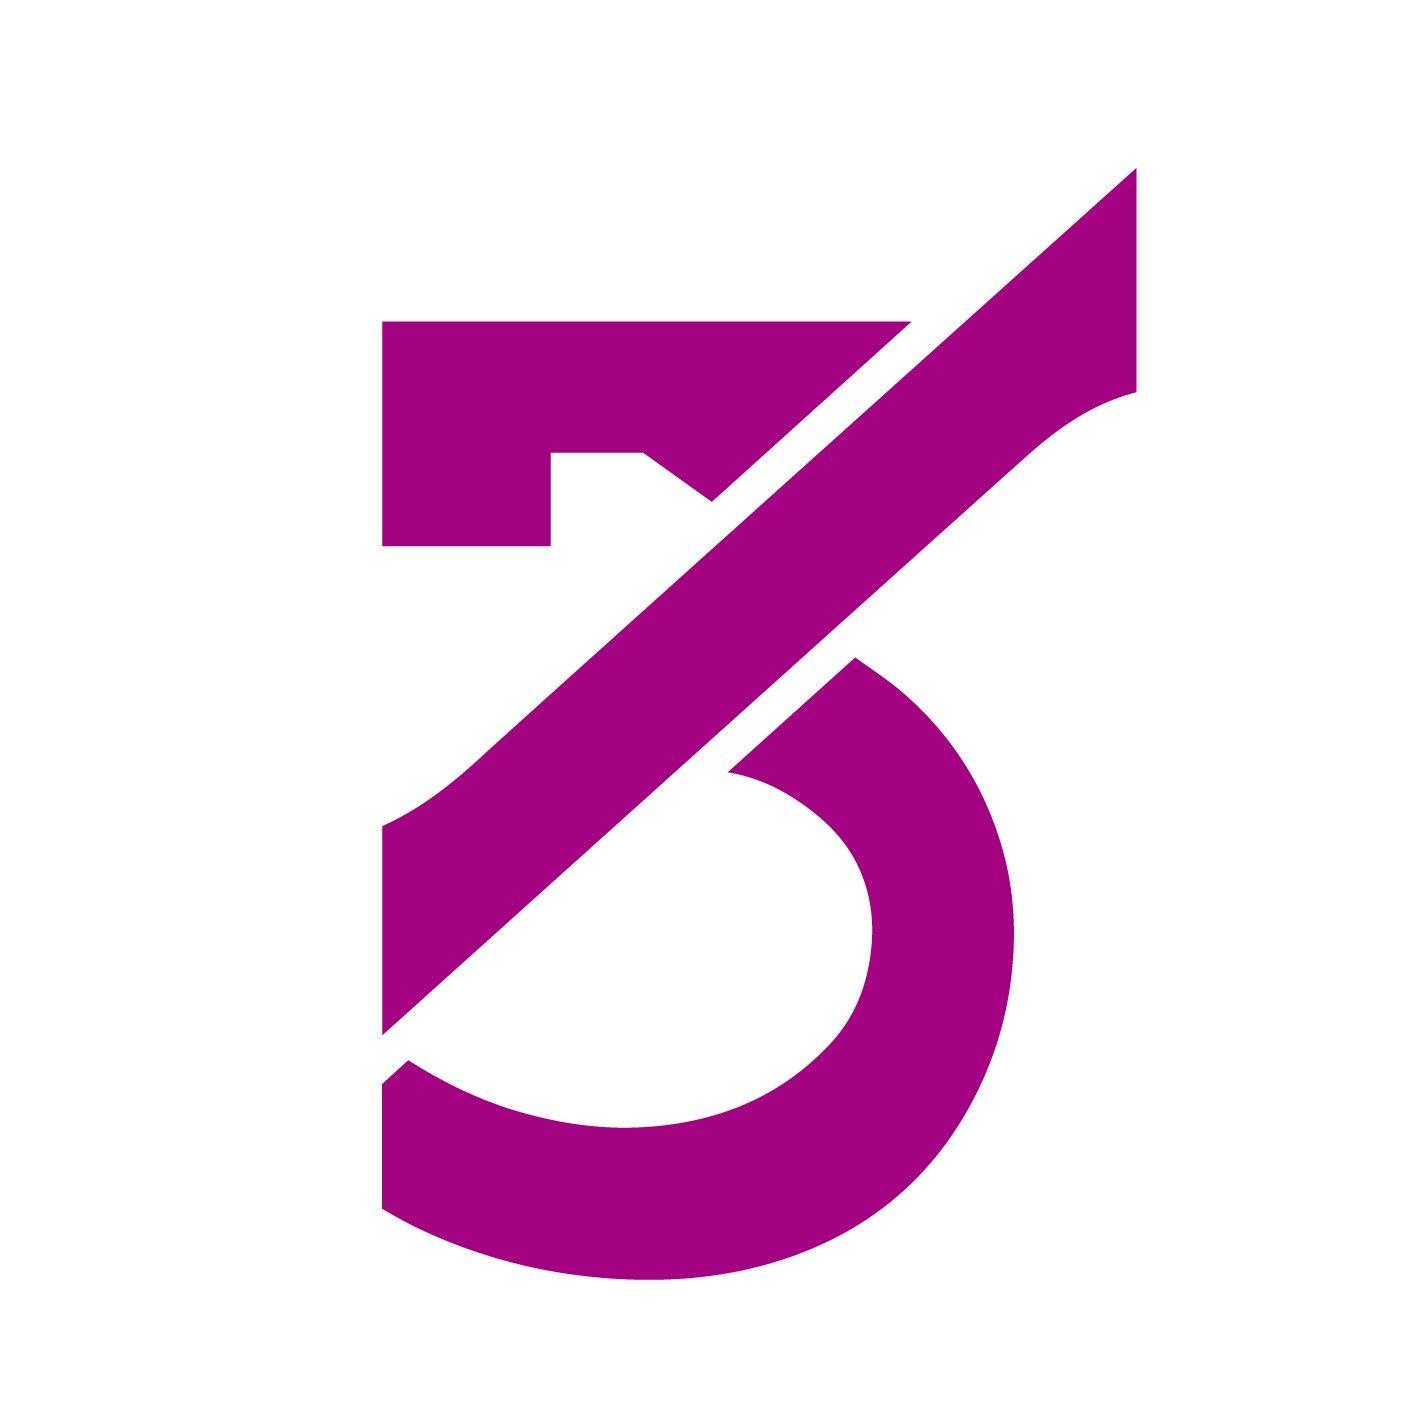 Statement Logo - 3B HOBBY COMPANY Statement of Updating Brand Name and LOGO - 3BHOBBY